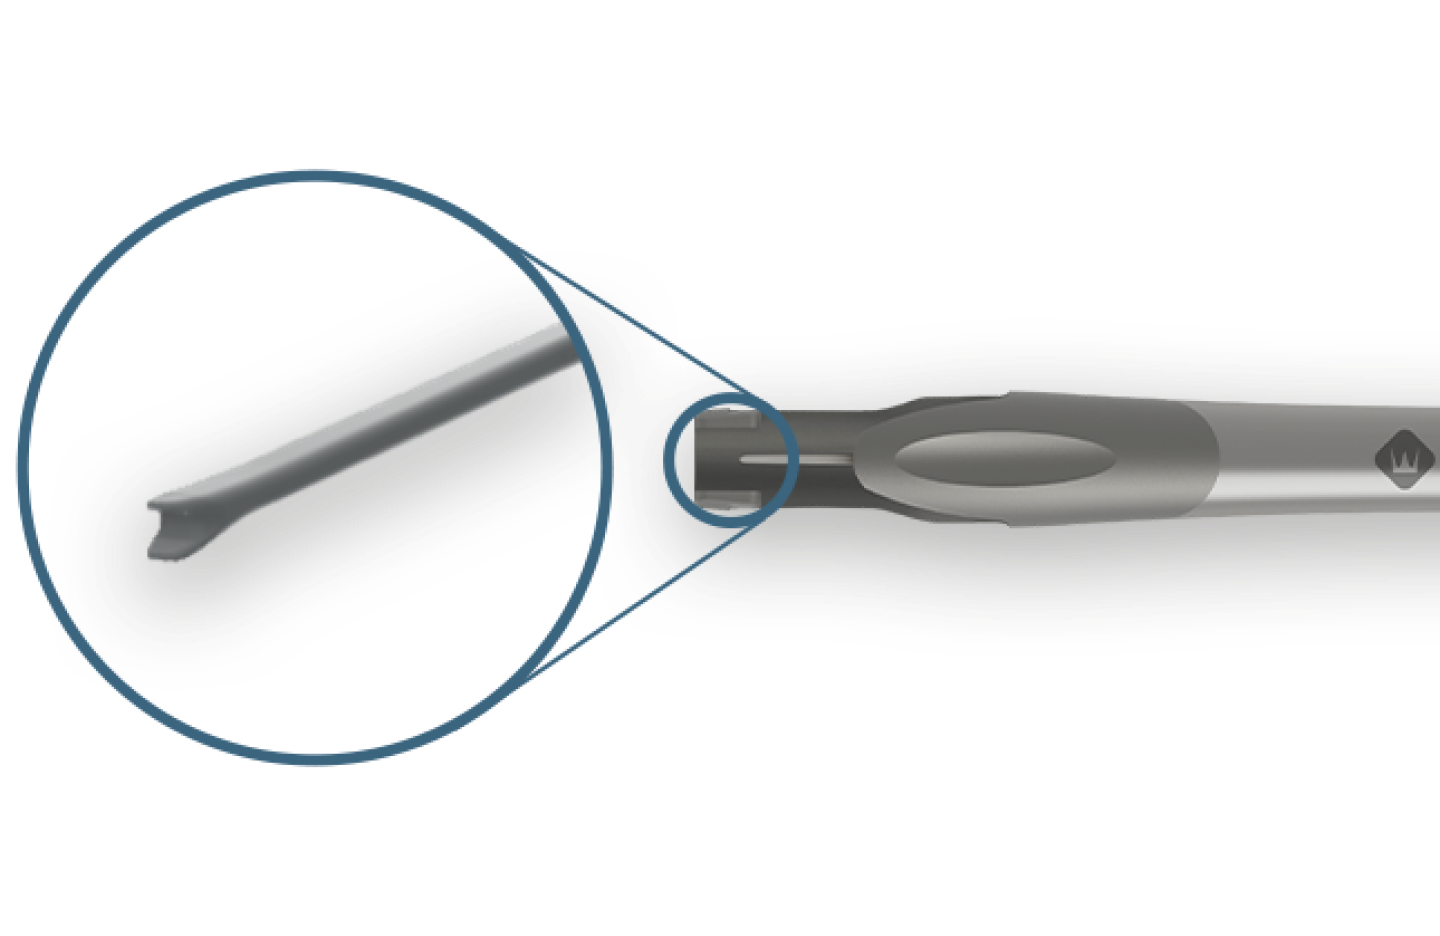 Clareon Monarch IV liegt horizontal. Ein blauer Kreis zieht die Aufmerksamkeit auf die Kolbenspitze.